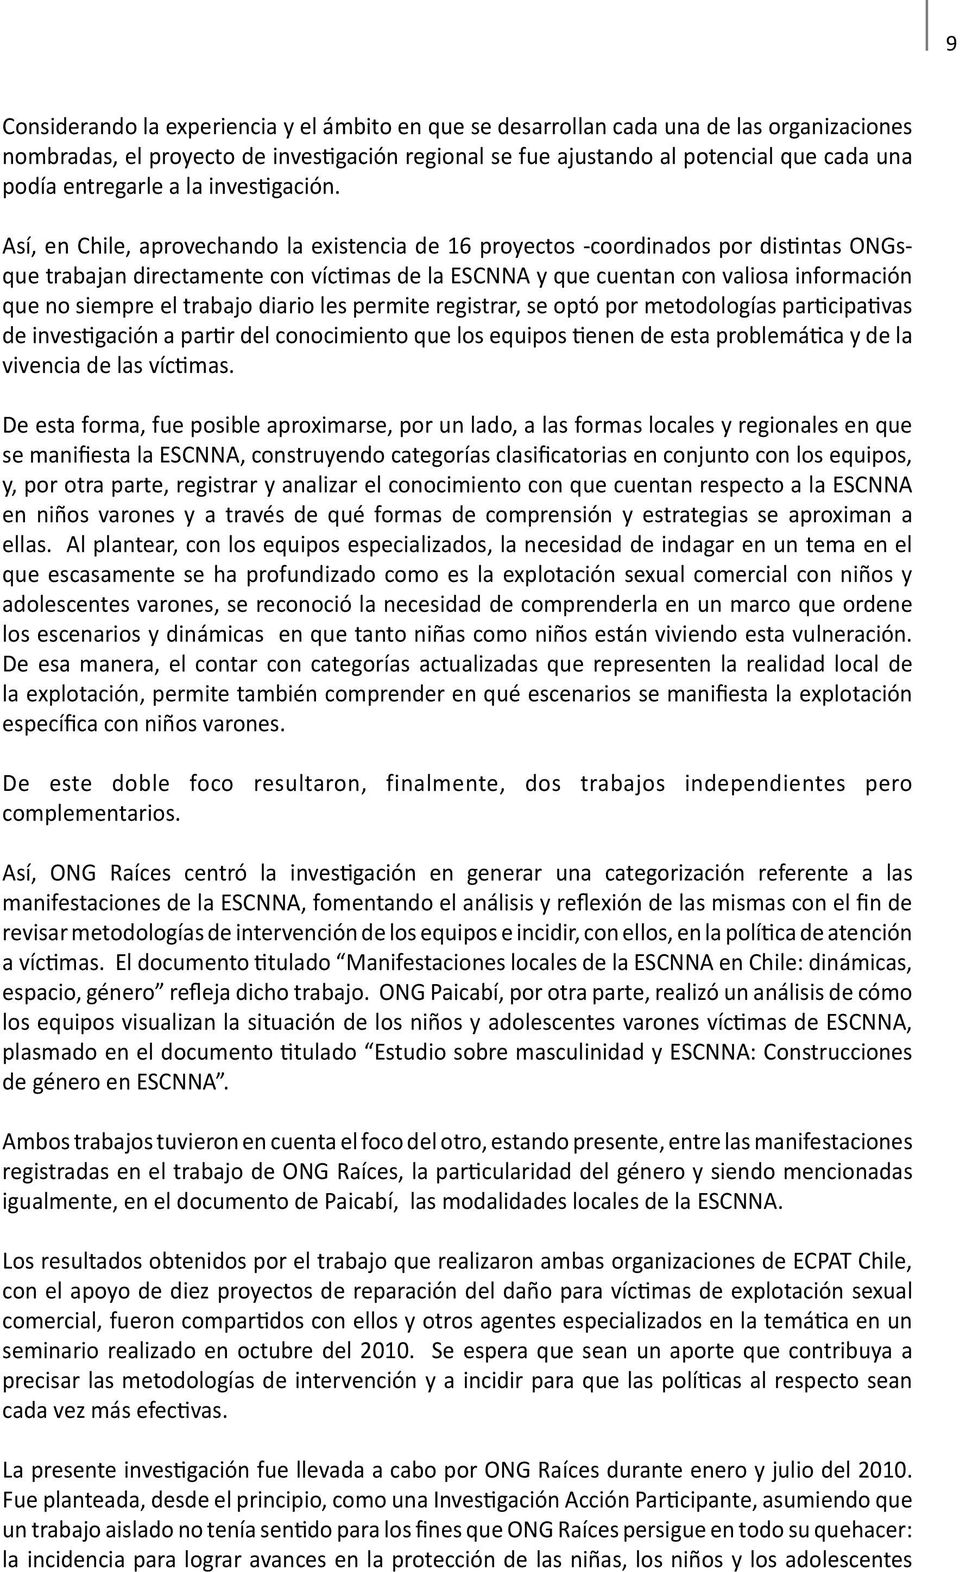 Así, en Chile, aprovechando la existencia de 16 proyectos -coordinados por distintas ONGsque trabajan directamente con víctimas de la ESCNNA y que cuentan con valiosa información que no siempre el